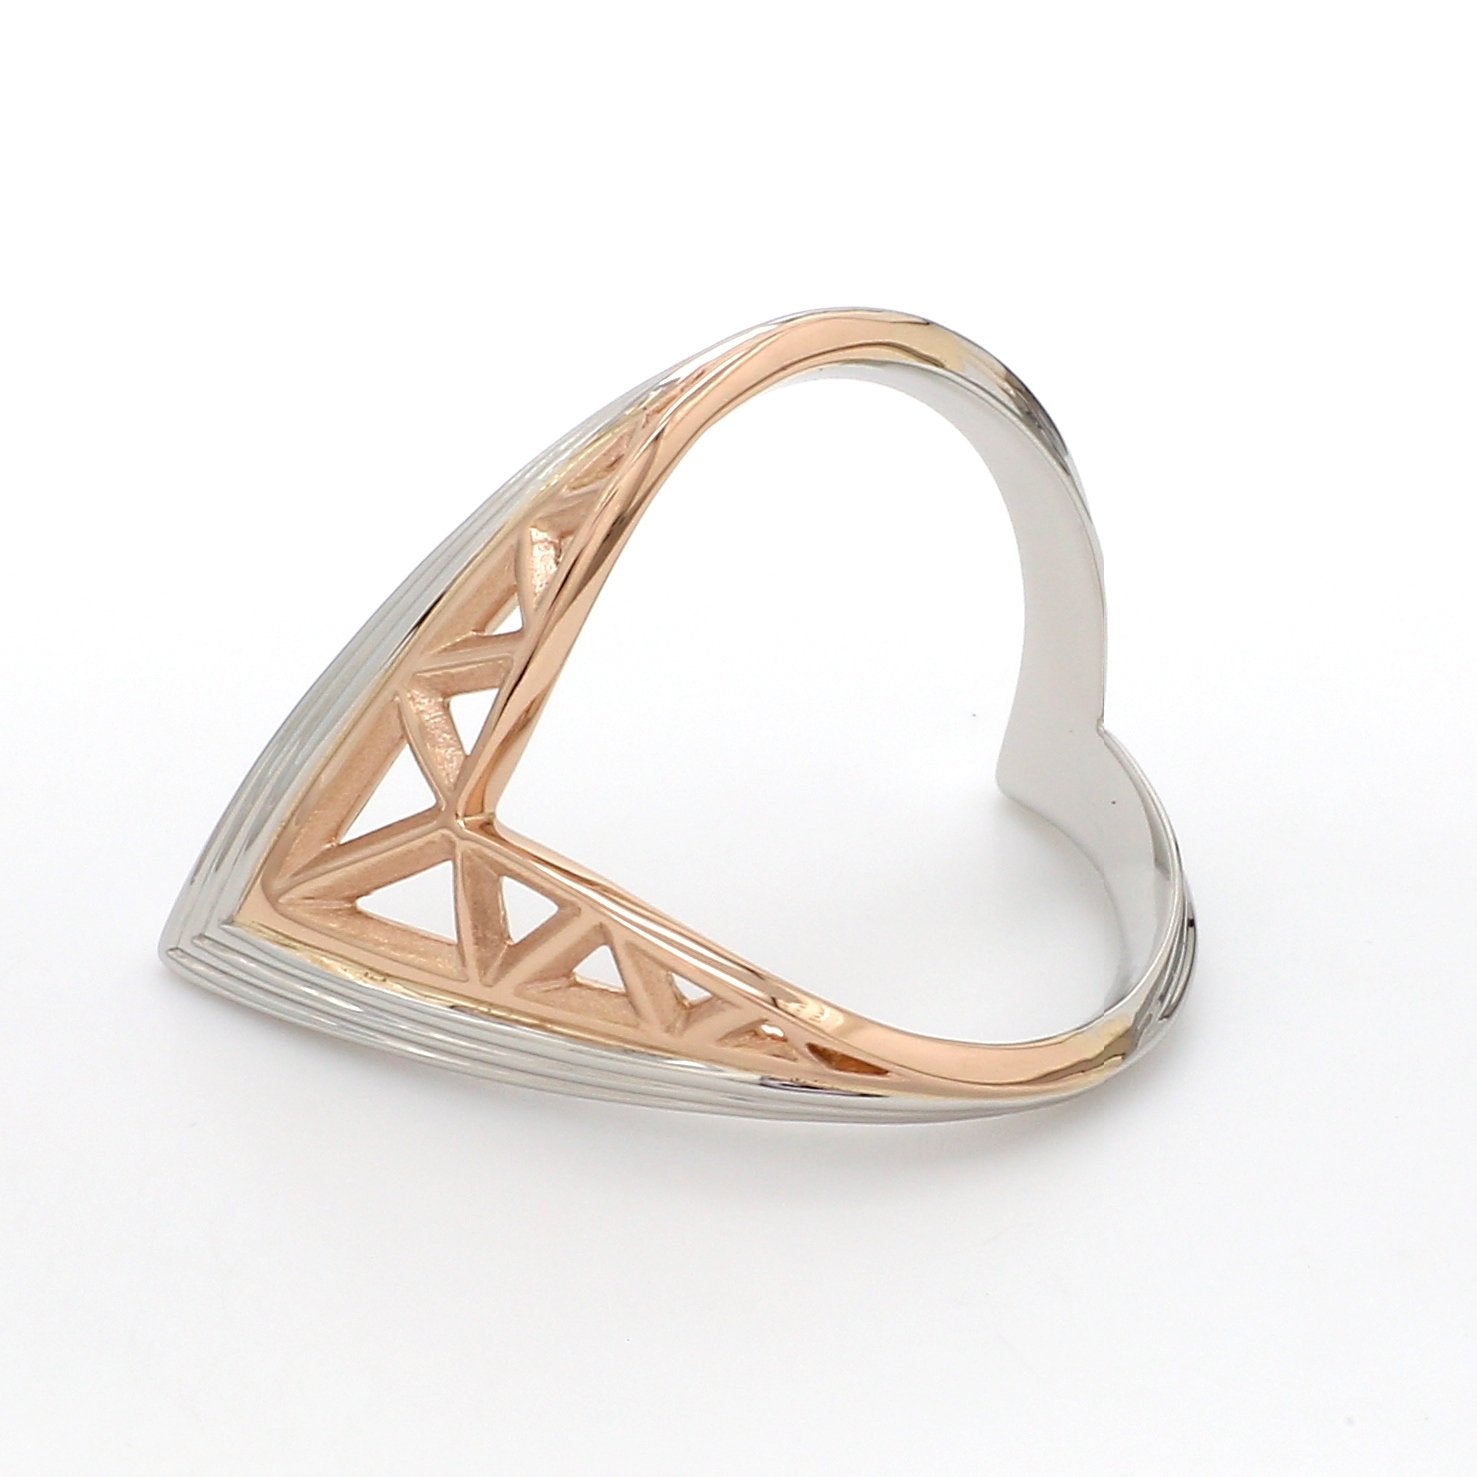 Designer V -shape Platinum & Rose Gold Cocktail Ring for Women JL PT 967   Jewelove.US